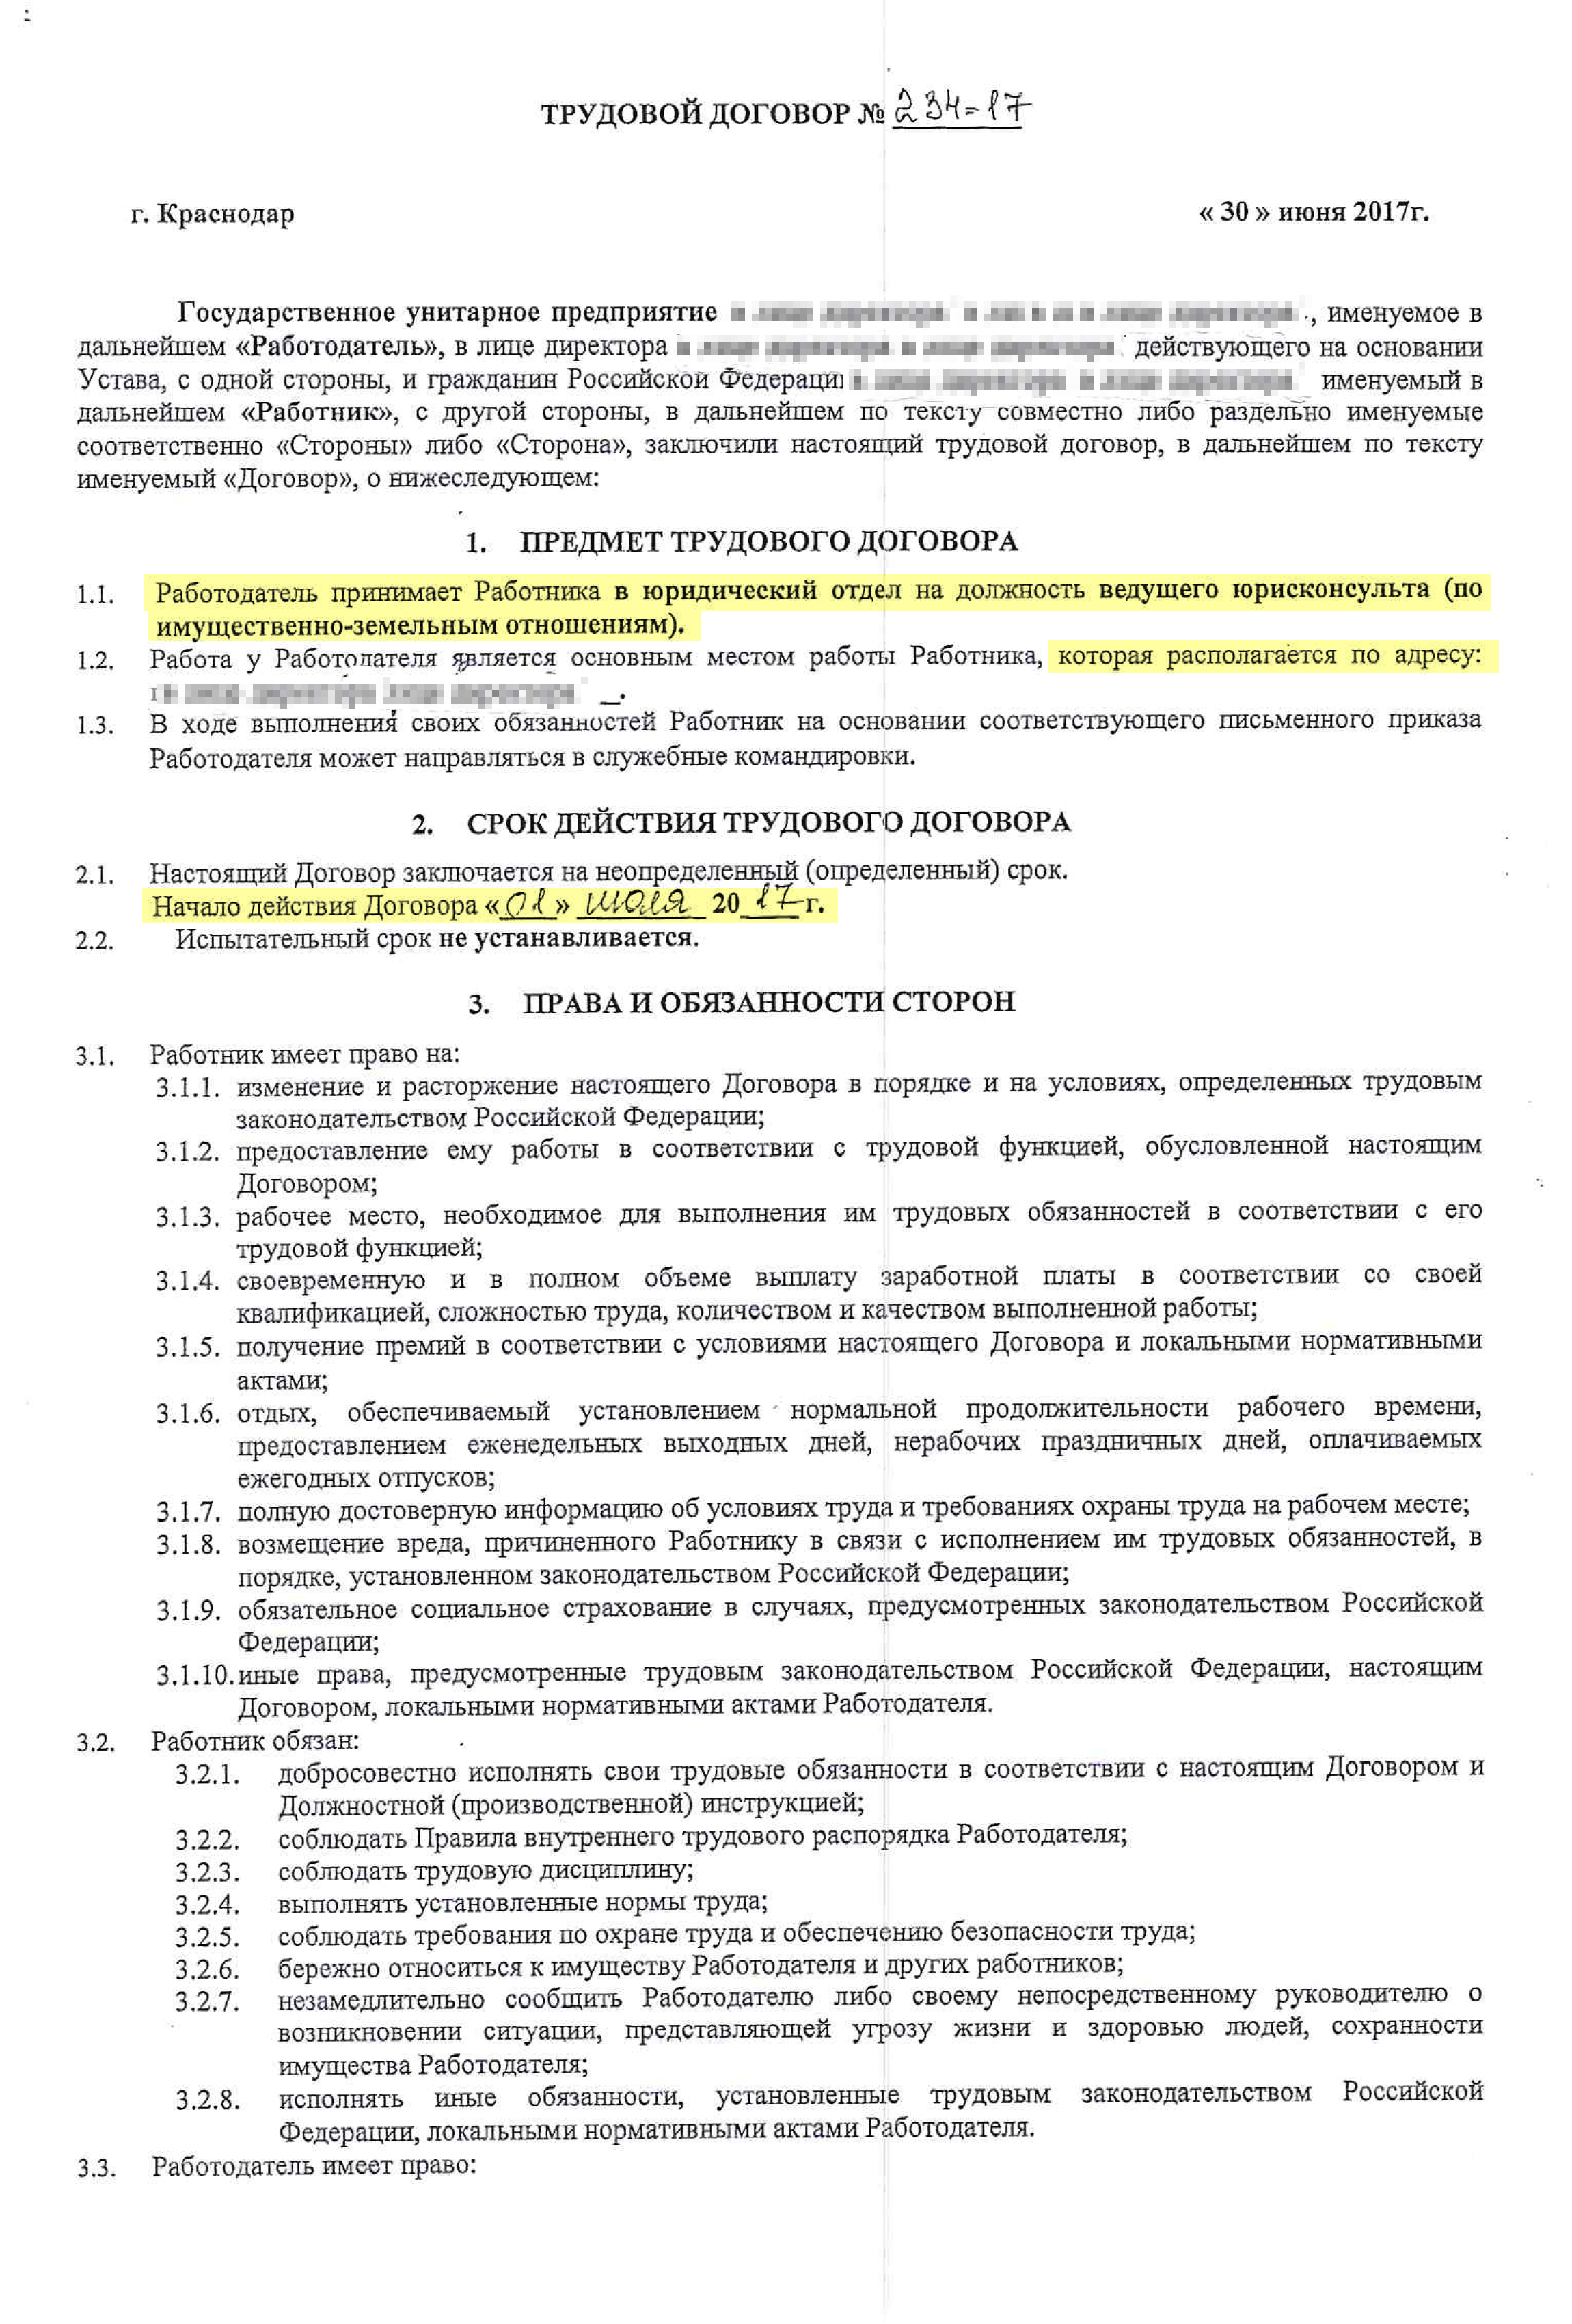 Статья 81 ТК РФ. Расторжение трудового договора по инициативе работодателя